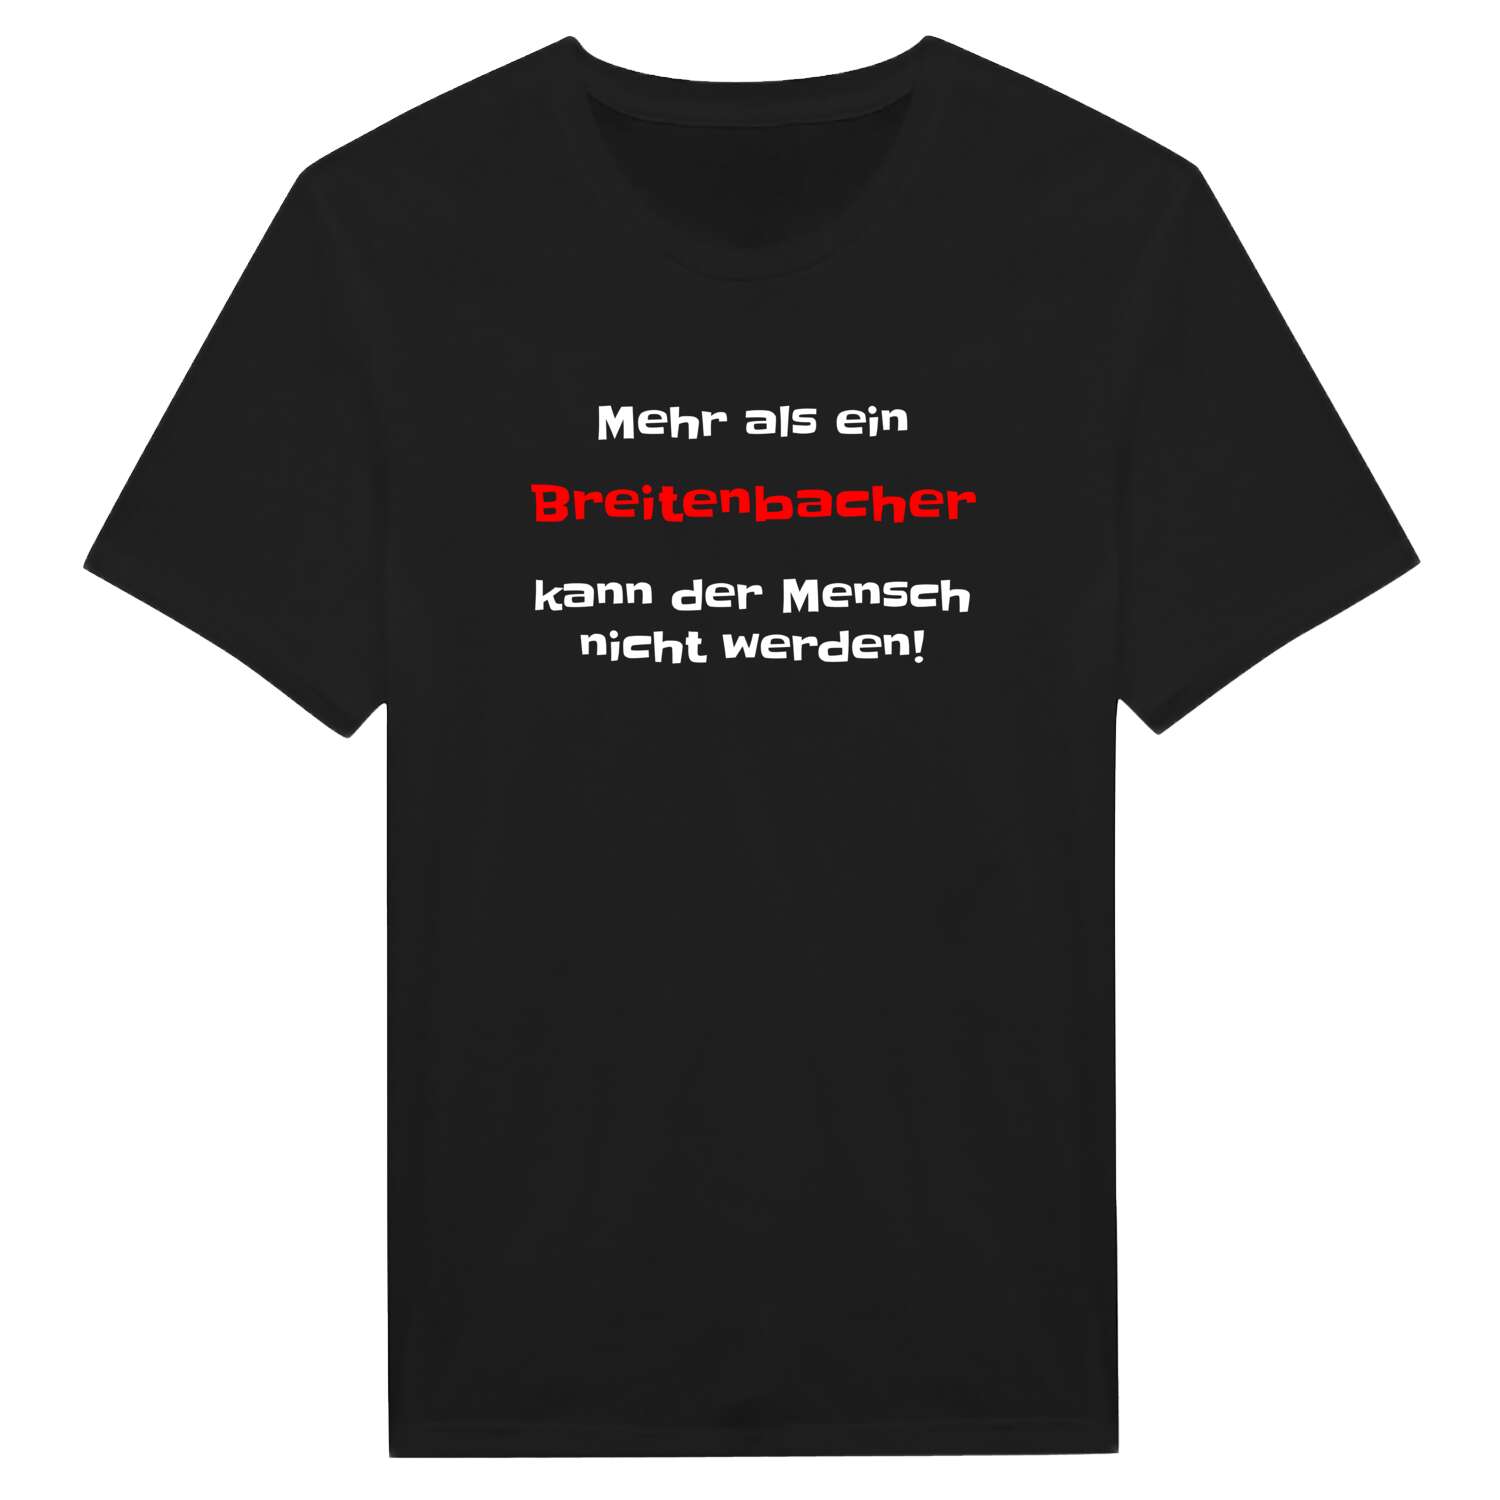 Breitenbach T-Shirt »Mehr als ein«